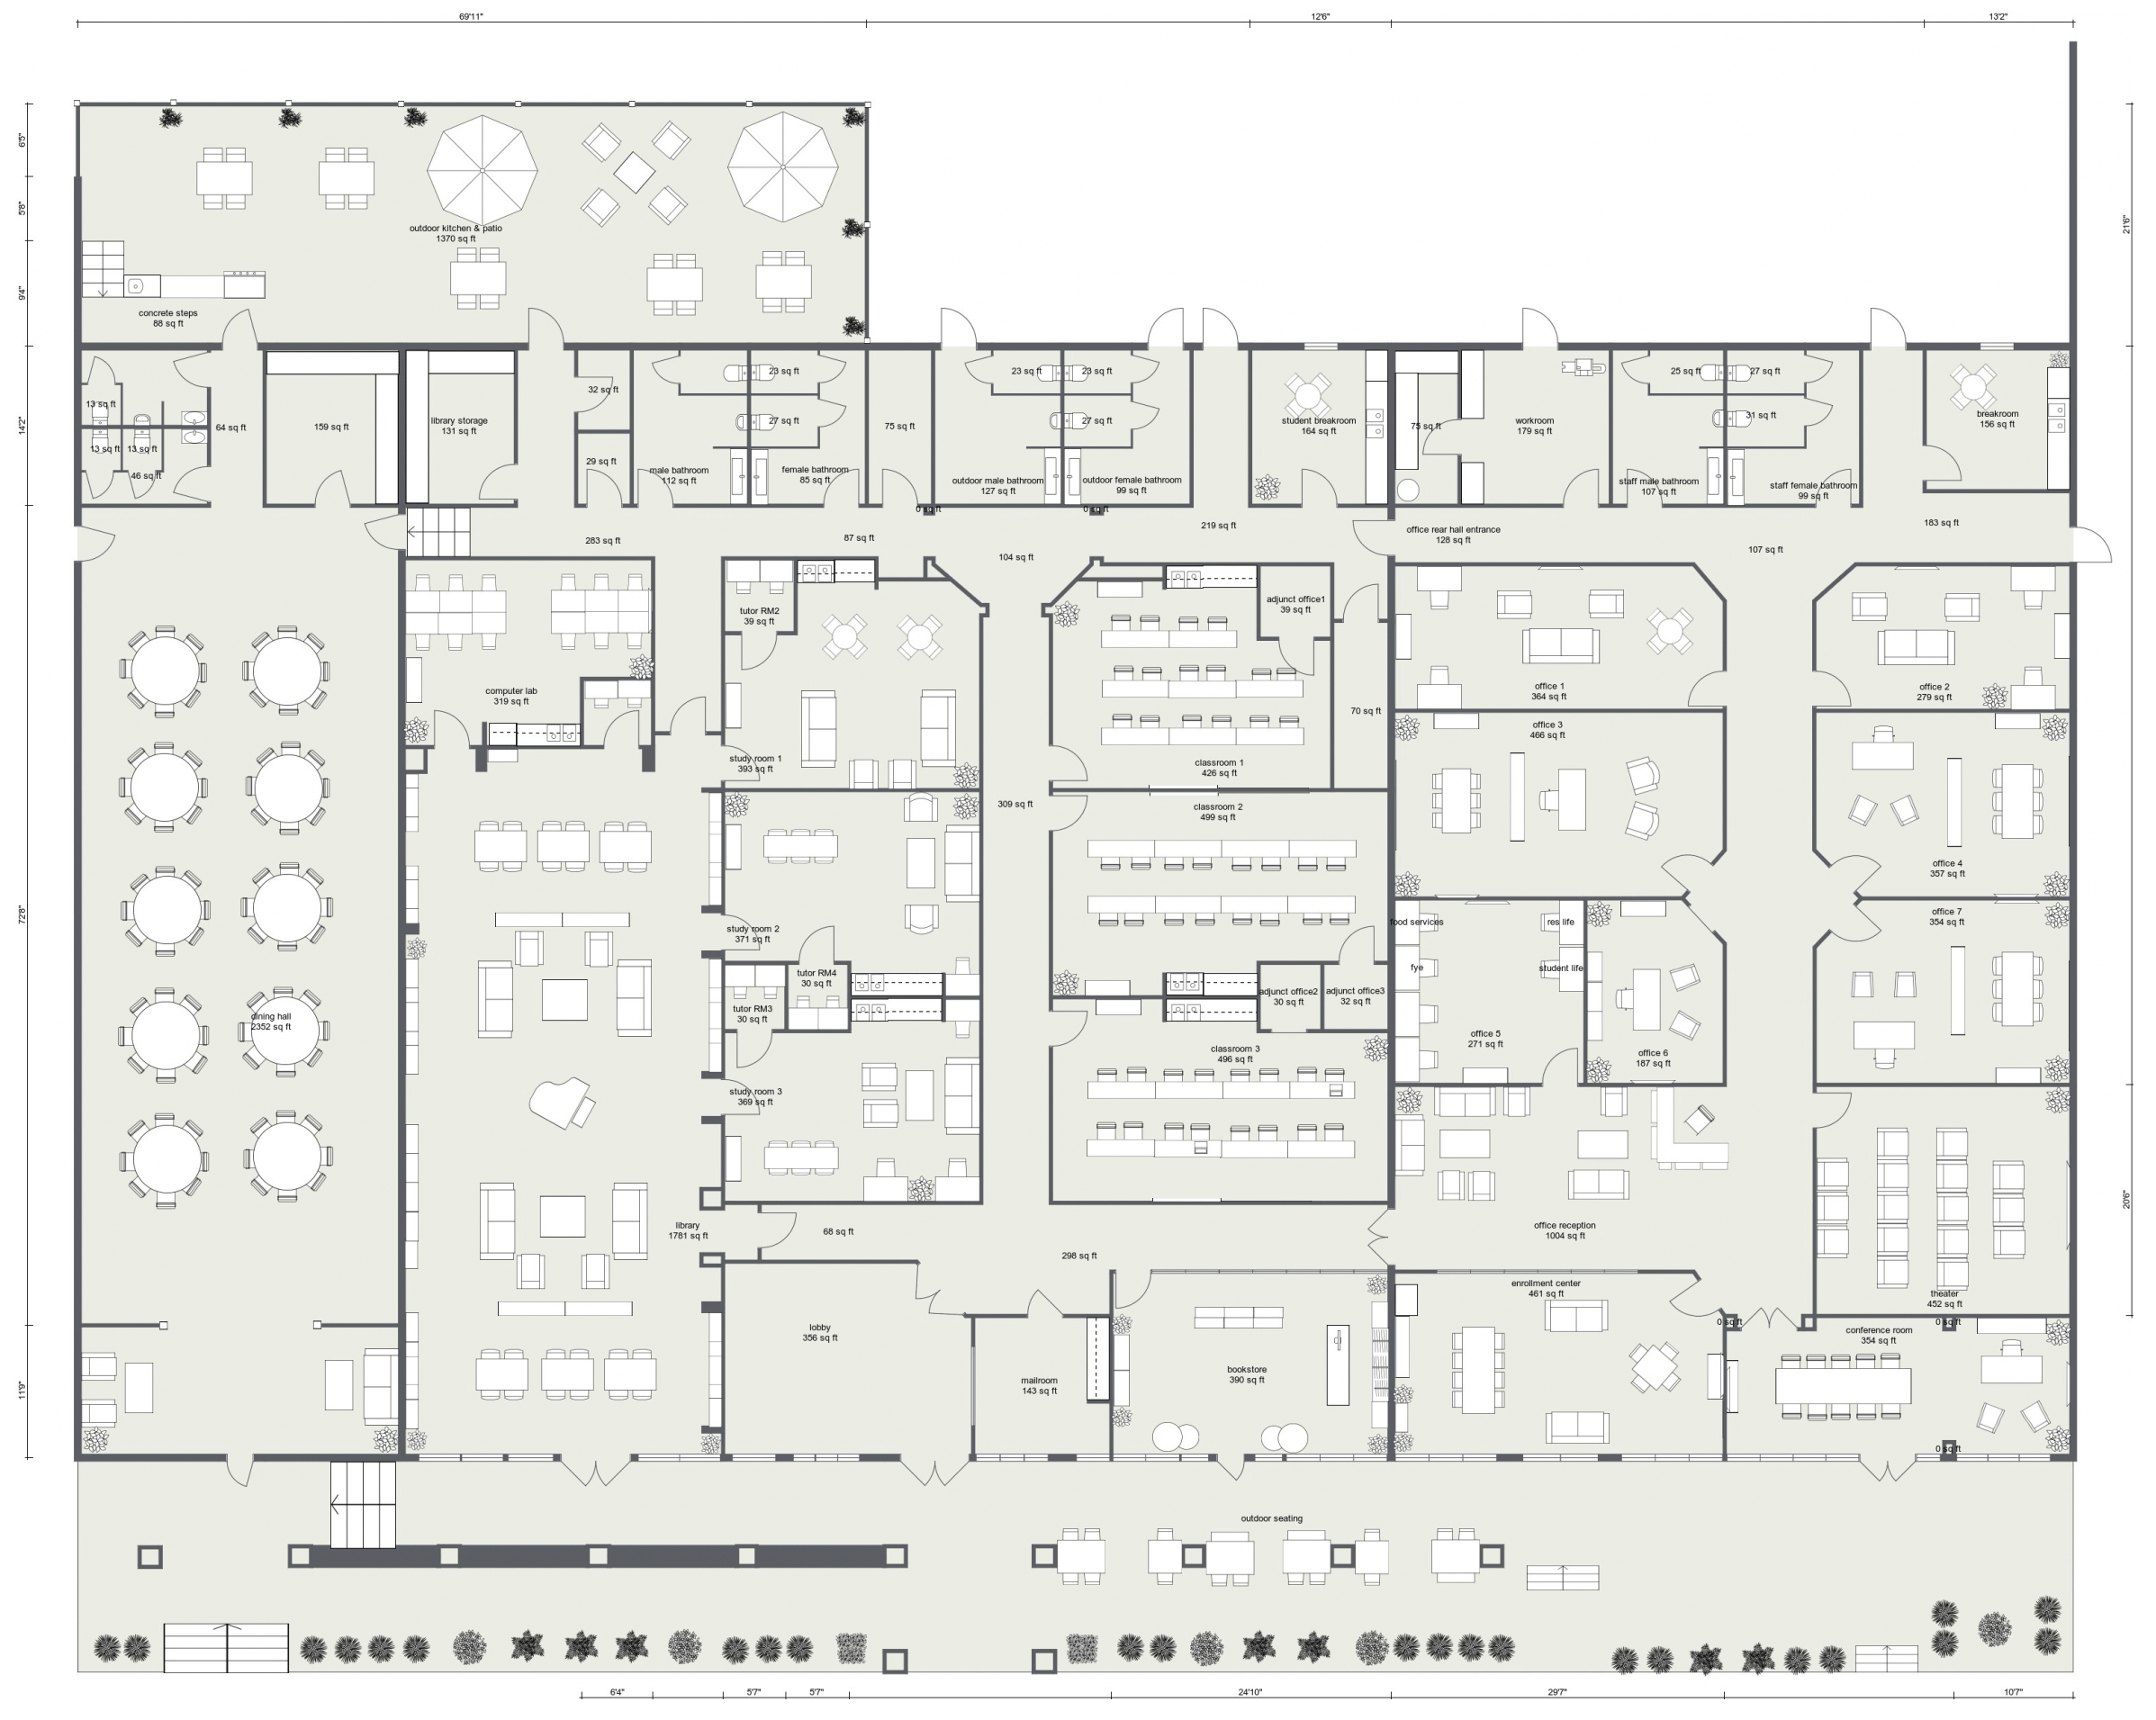 Floor Plan of New Campus